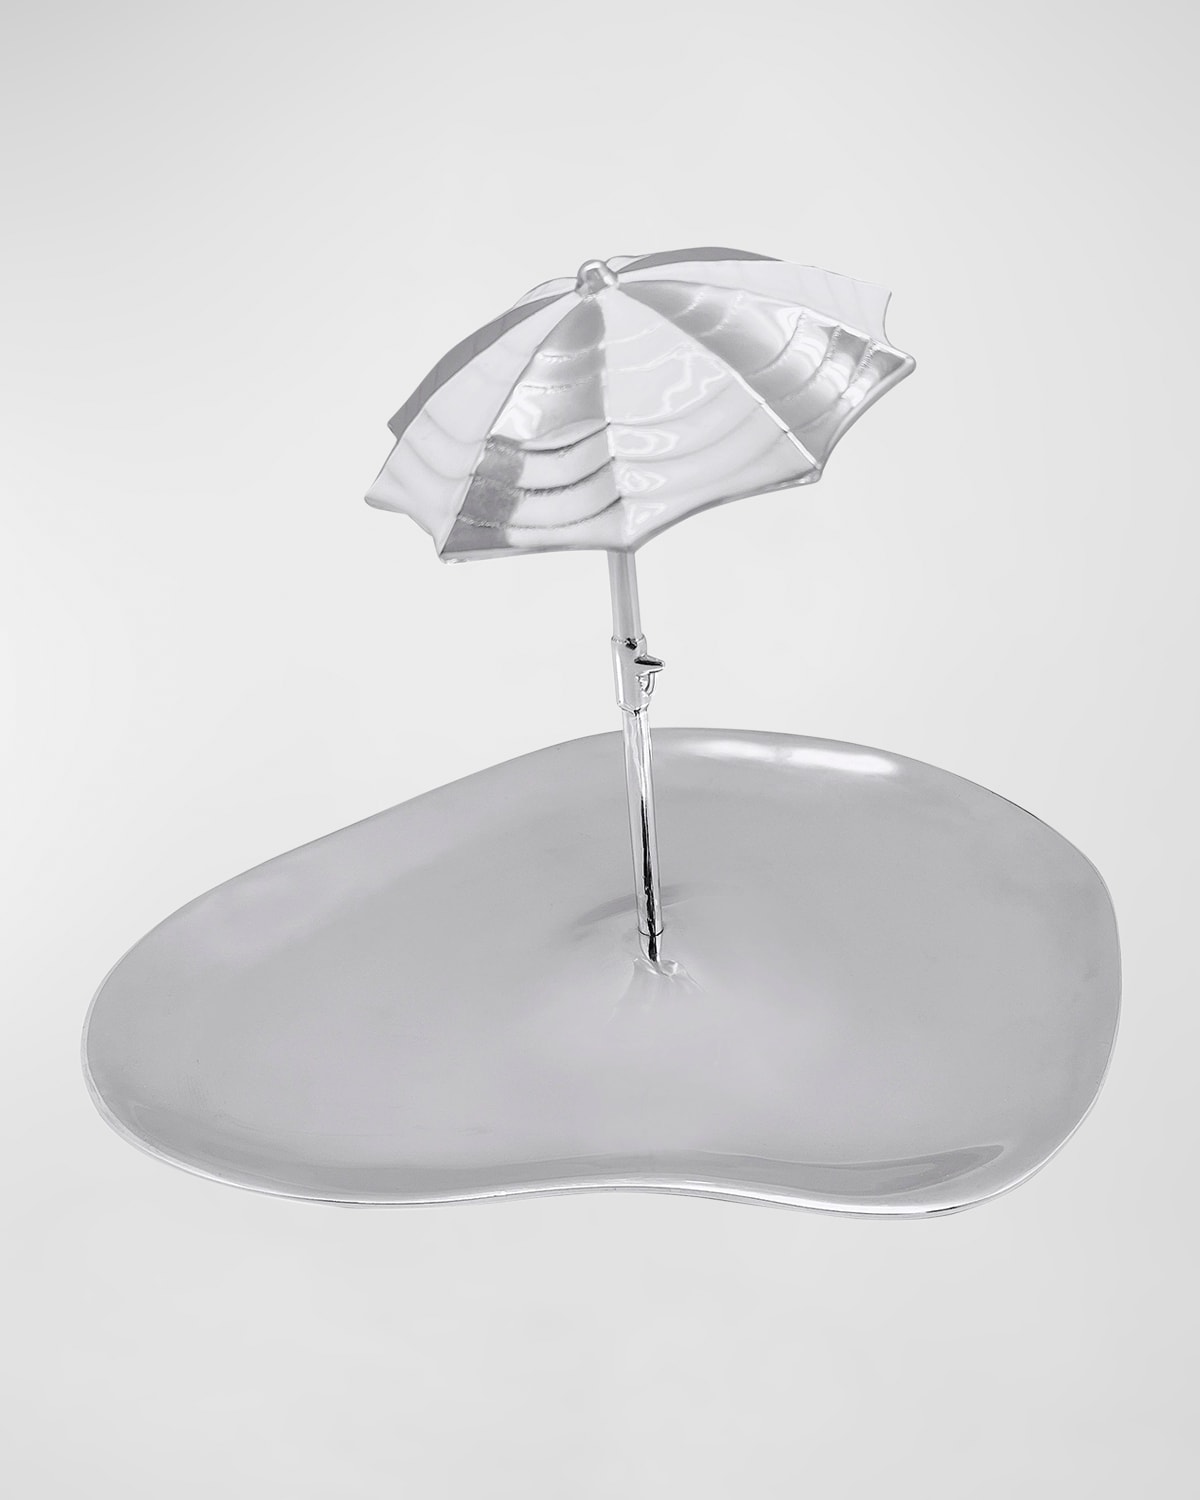 Mariposa Umbrella Serving Platter